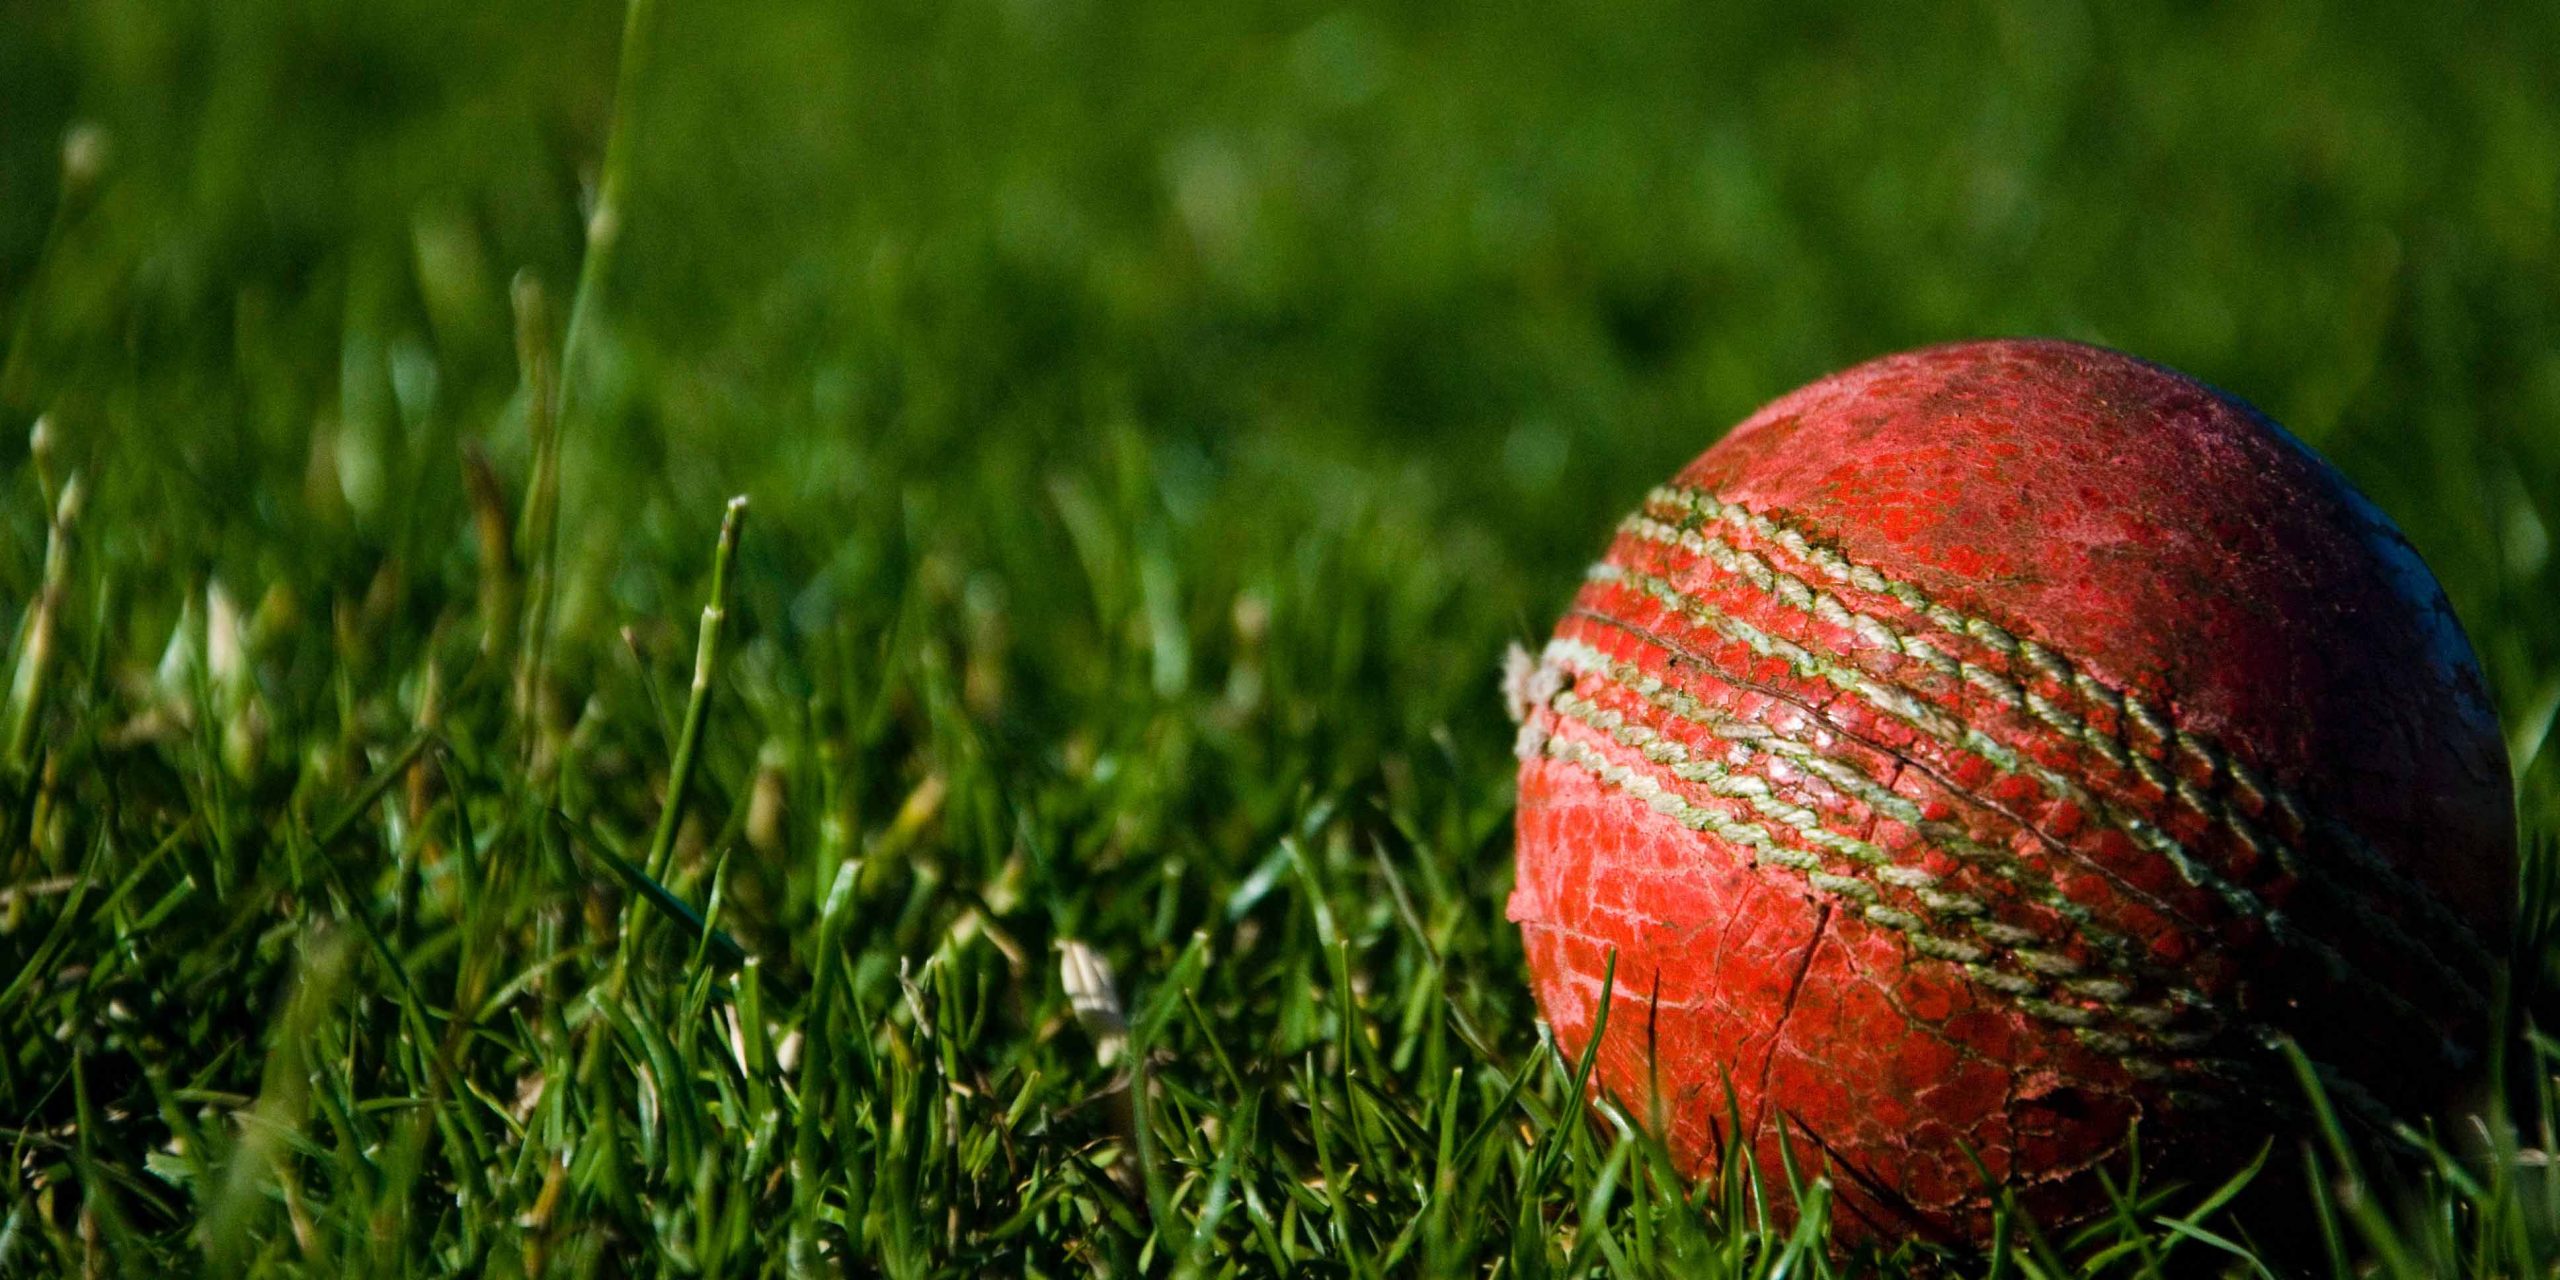 cricket ball on grass